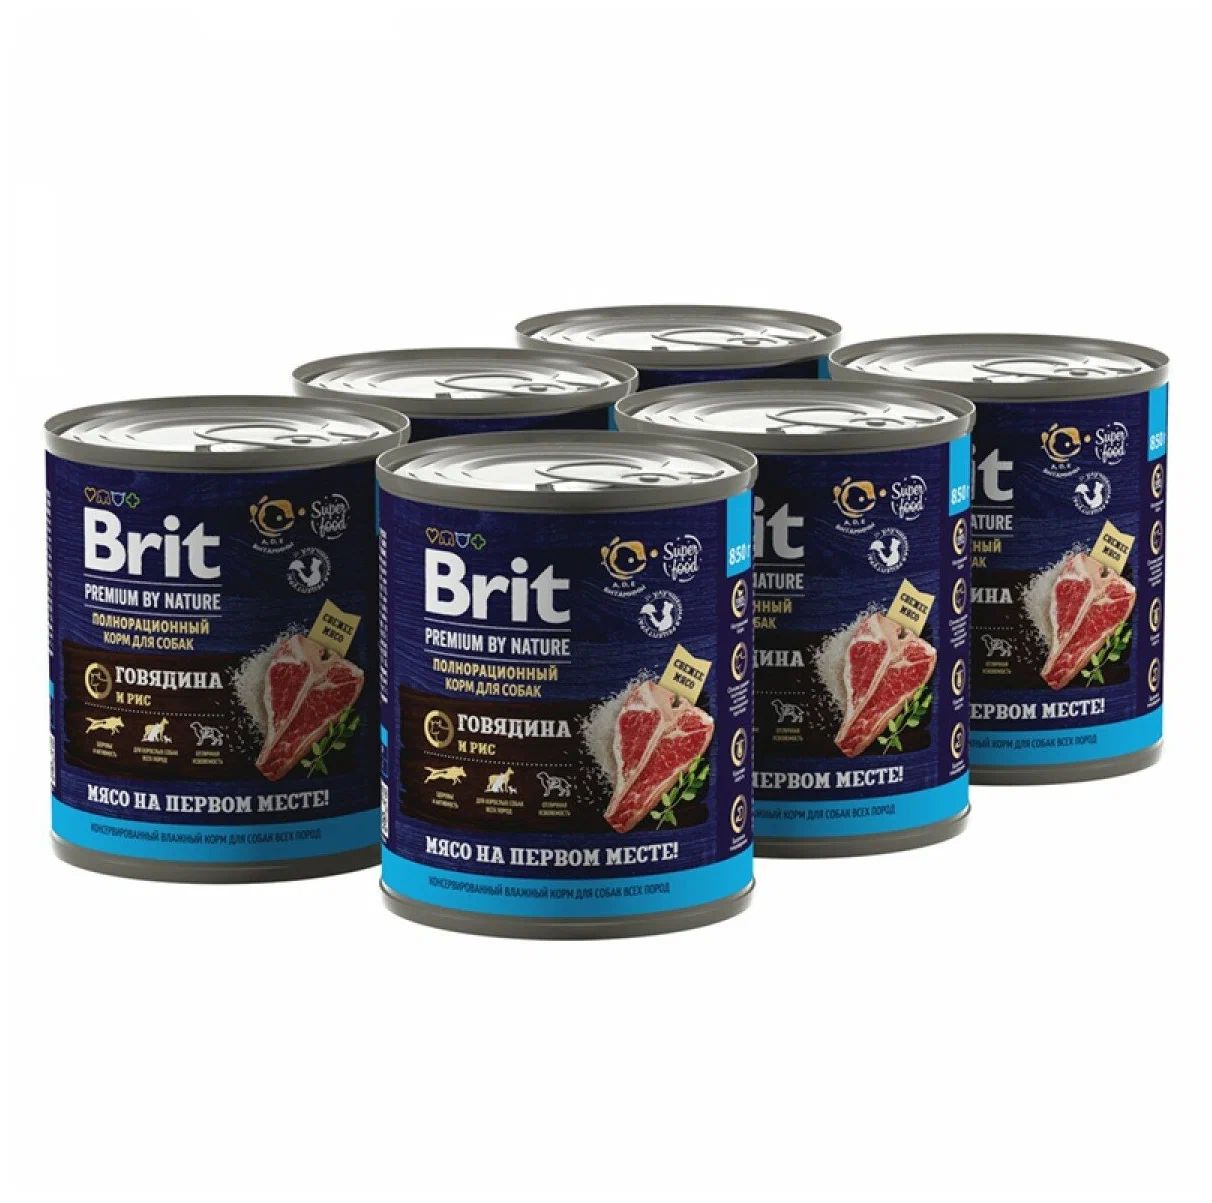 Консервы для собак Brit Premium By Nature Dog с говядиной и рисом, 6 шт 850 г